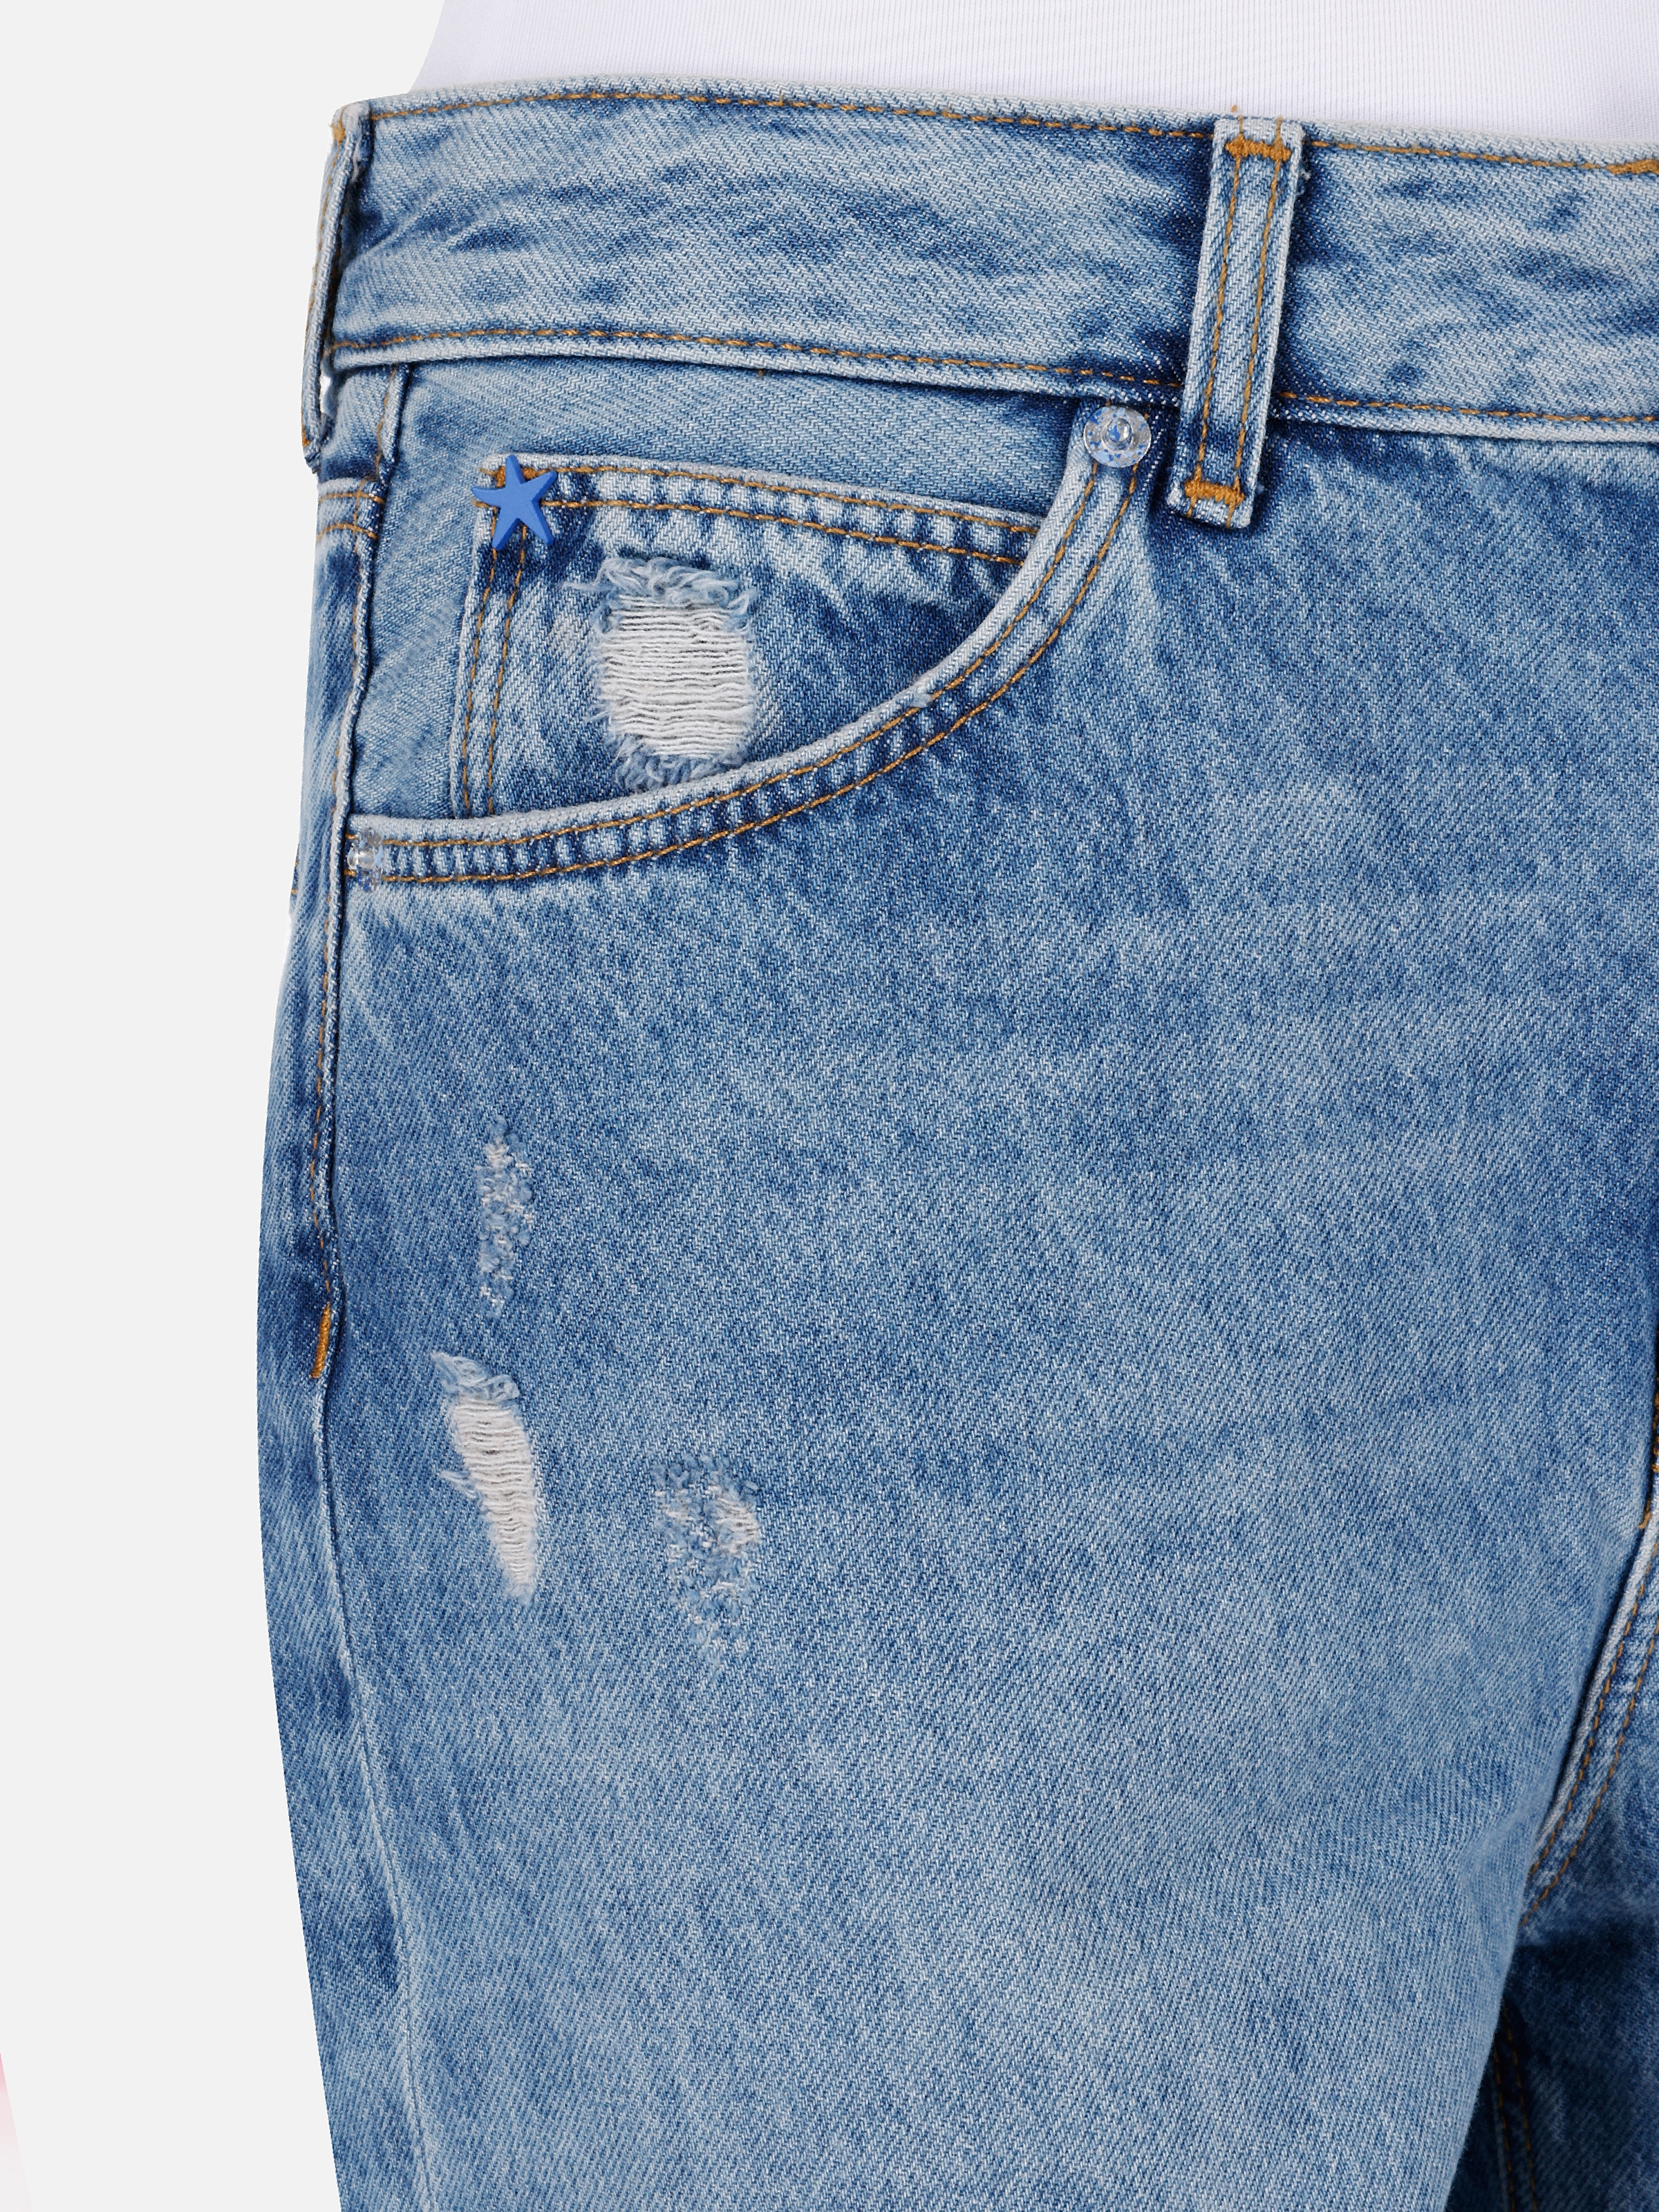 Afișați detalii pentru Short / Pantaloni Scurti De Dama Denim Regular Fit 